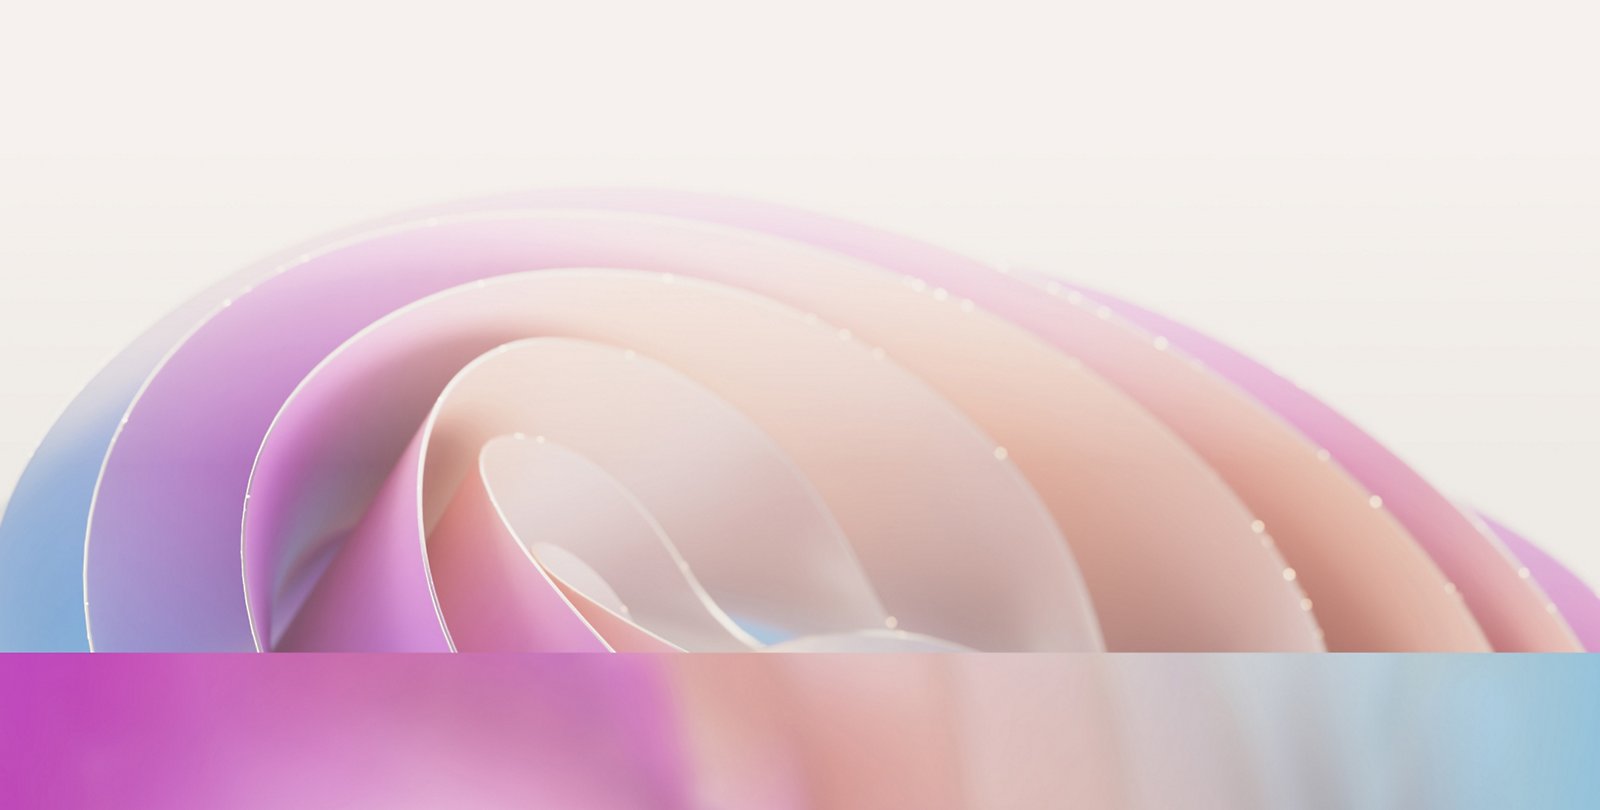 ピンク、紫、青の濃淡を持つソフトなパステル調の曲線が重なり合い、緩やかな波状のパターンが生み出された抽象的な画像。